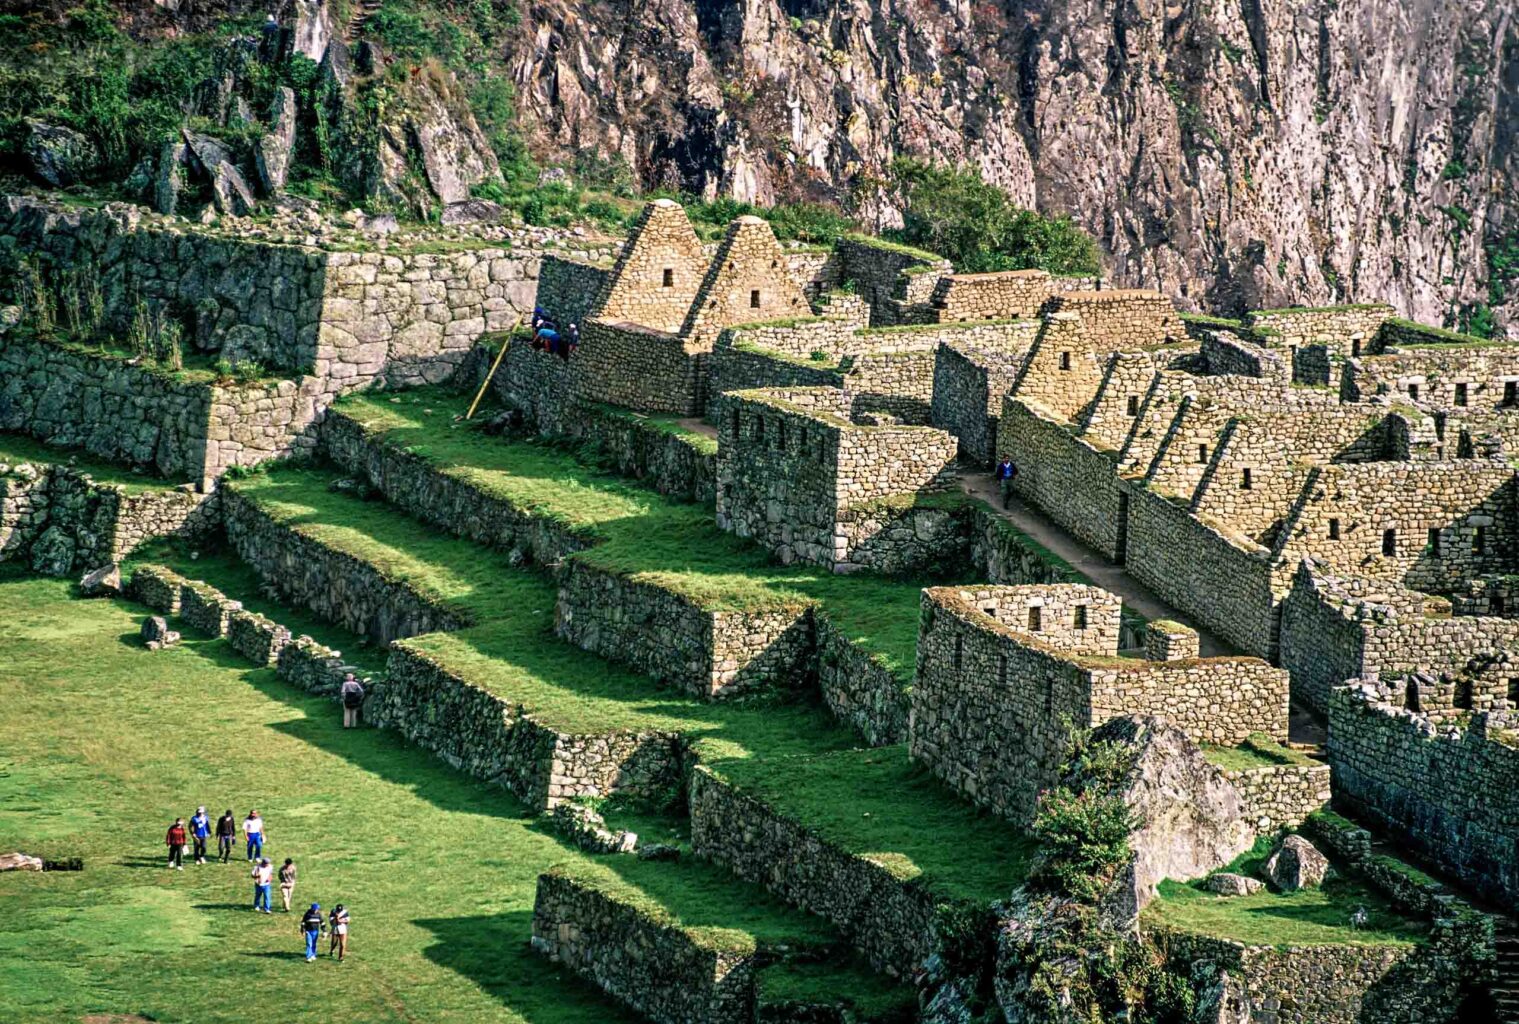 Inca Ruins, Machu Picchu archaeological site.